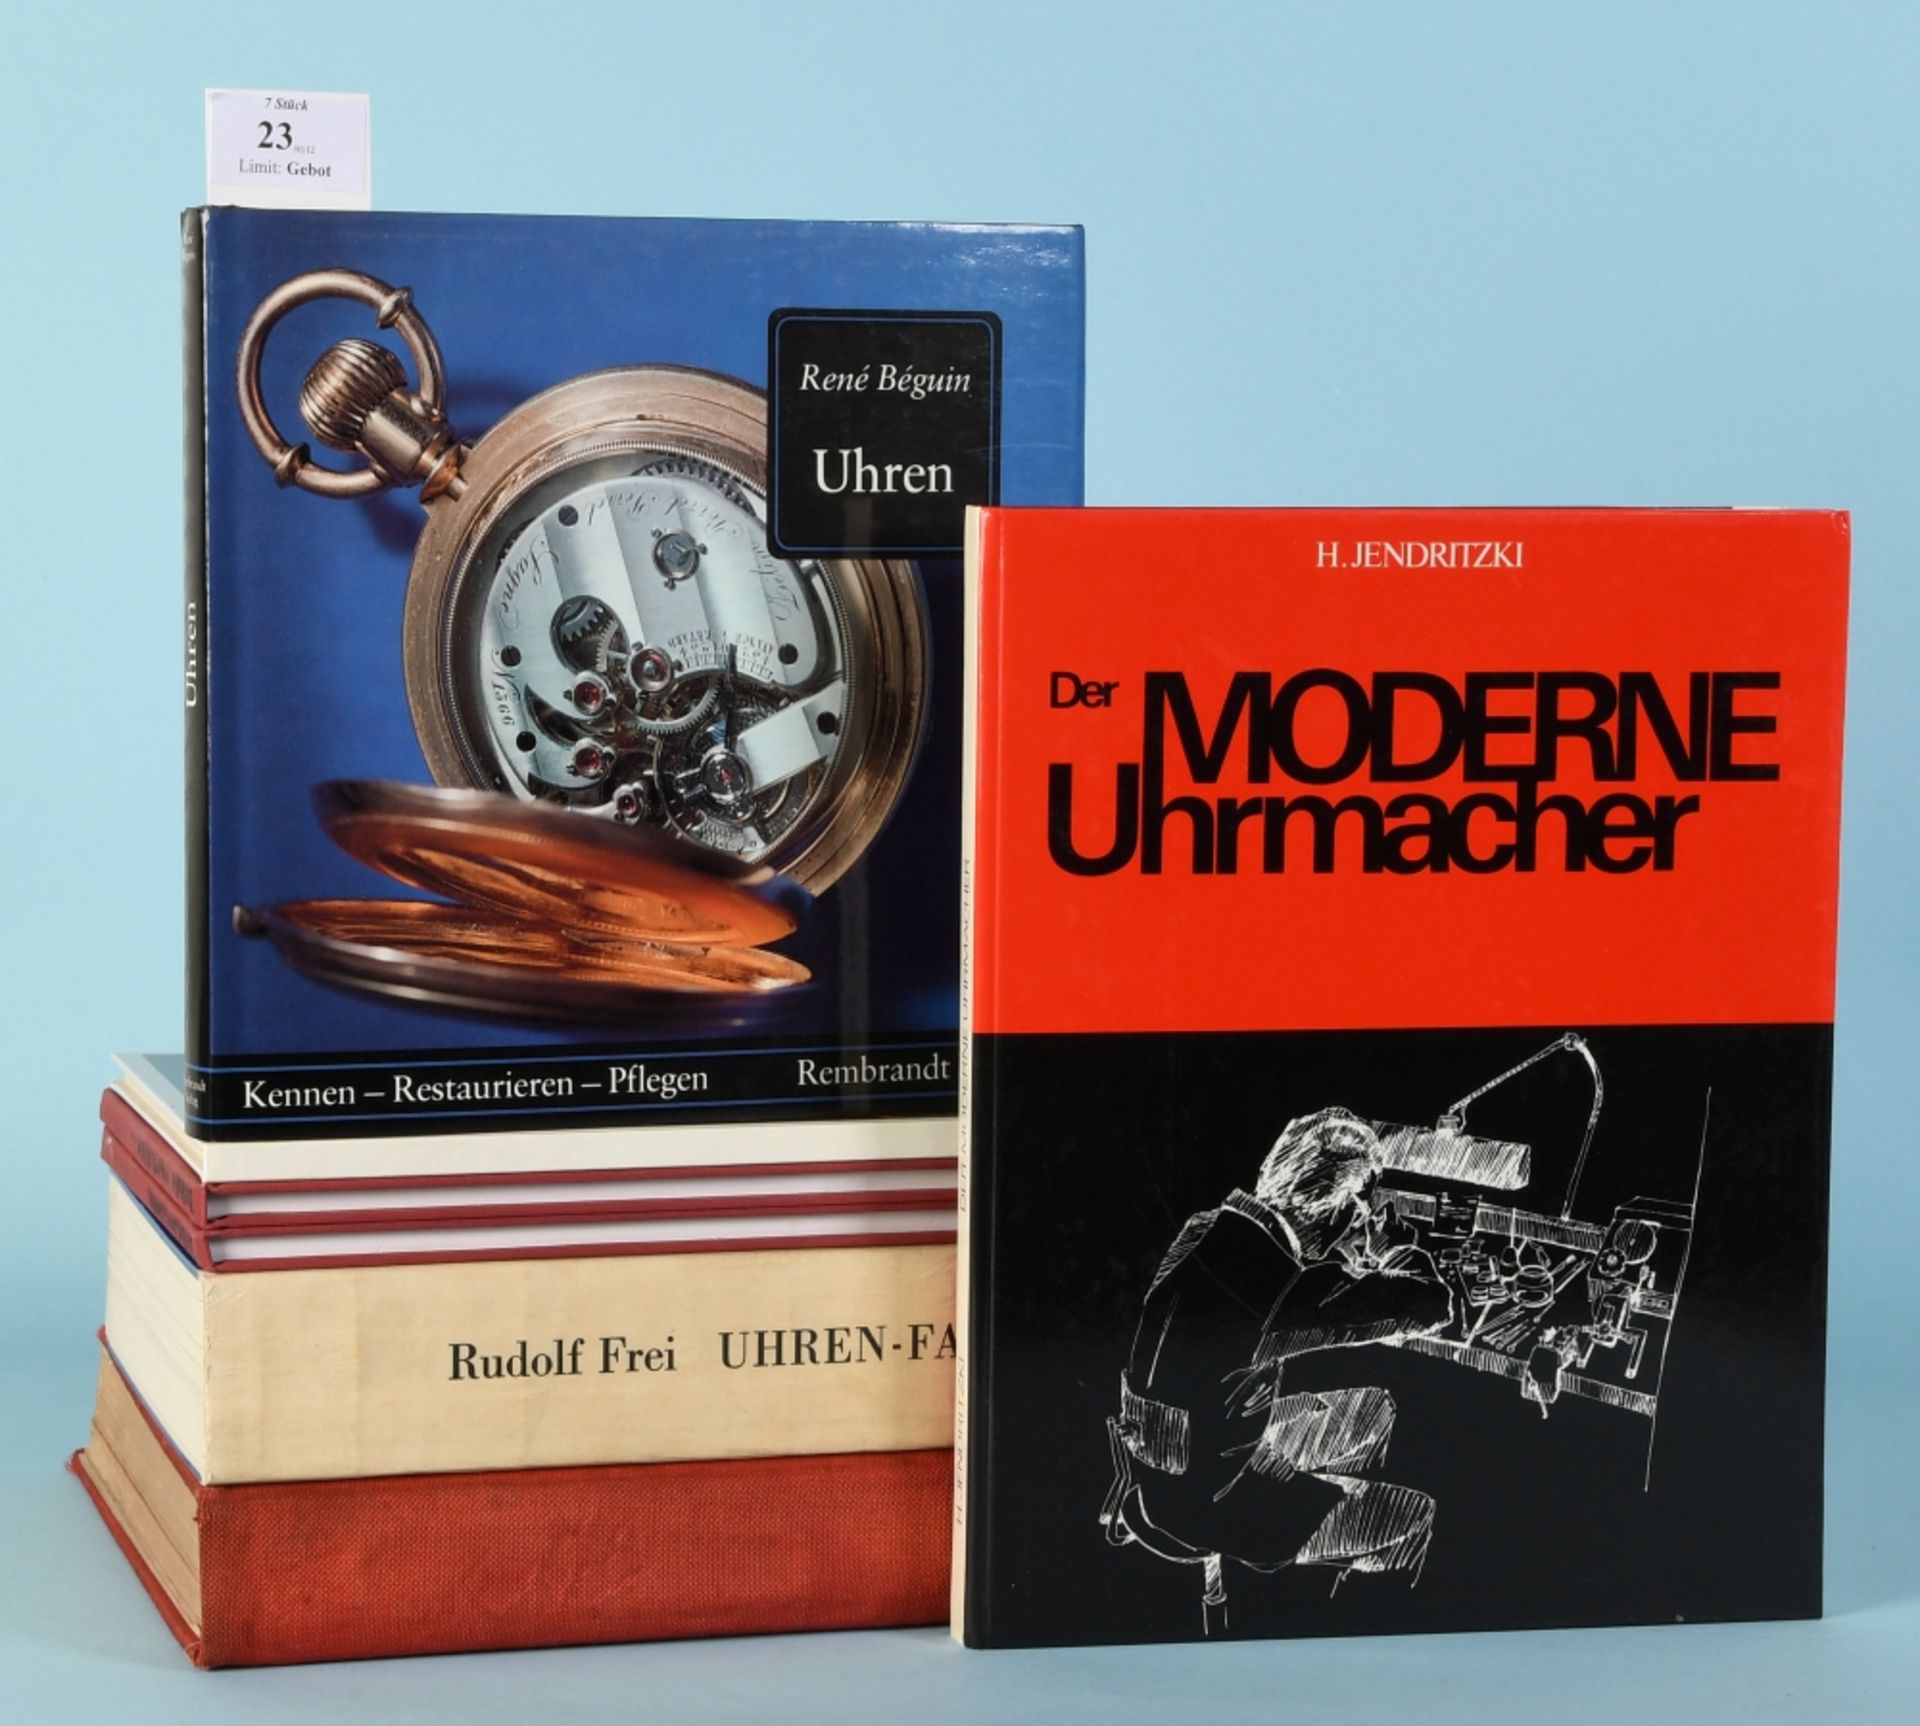 Bücher, 7 Stück "Fachliteratur für Uhrmacher"